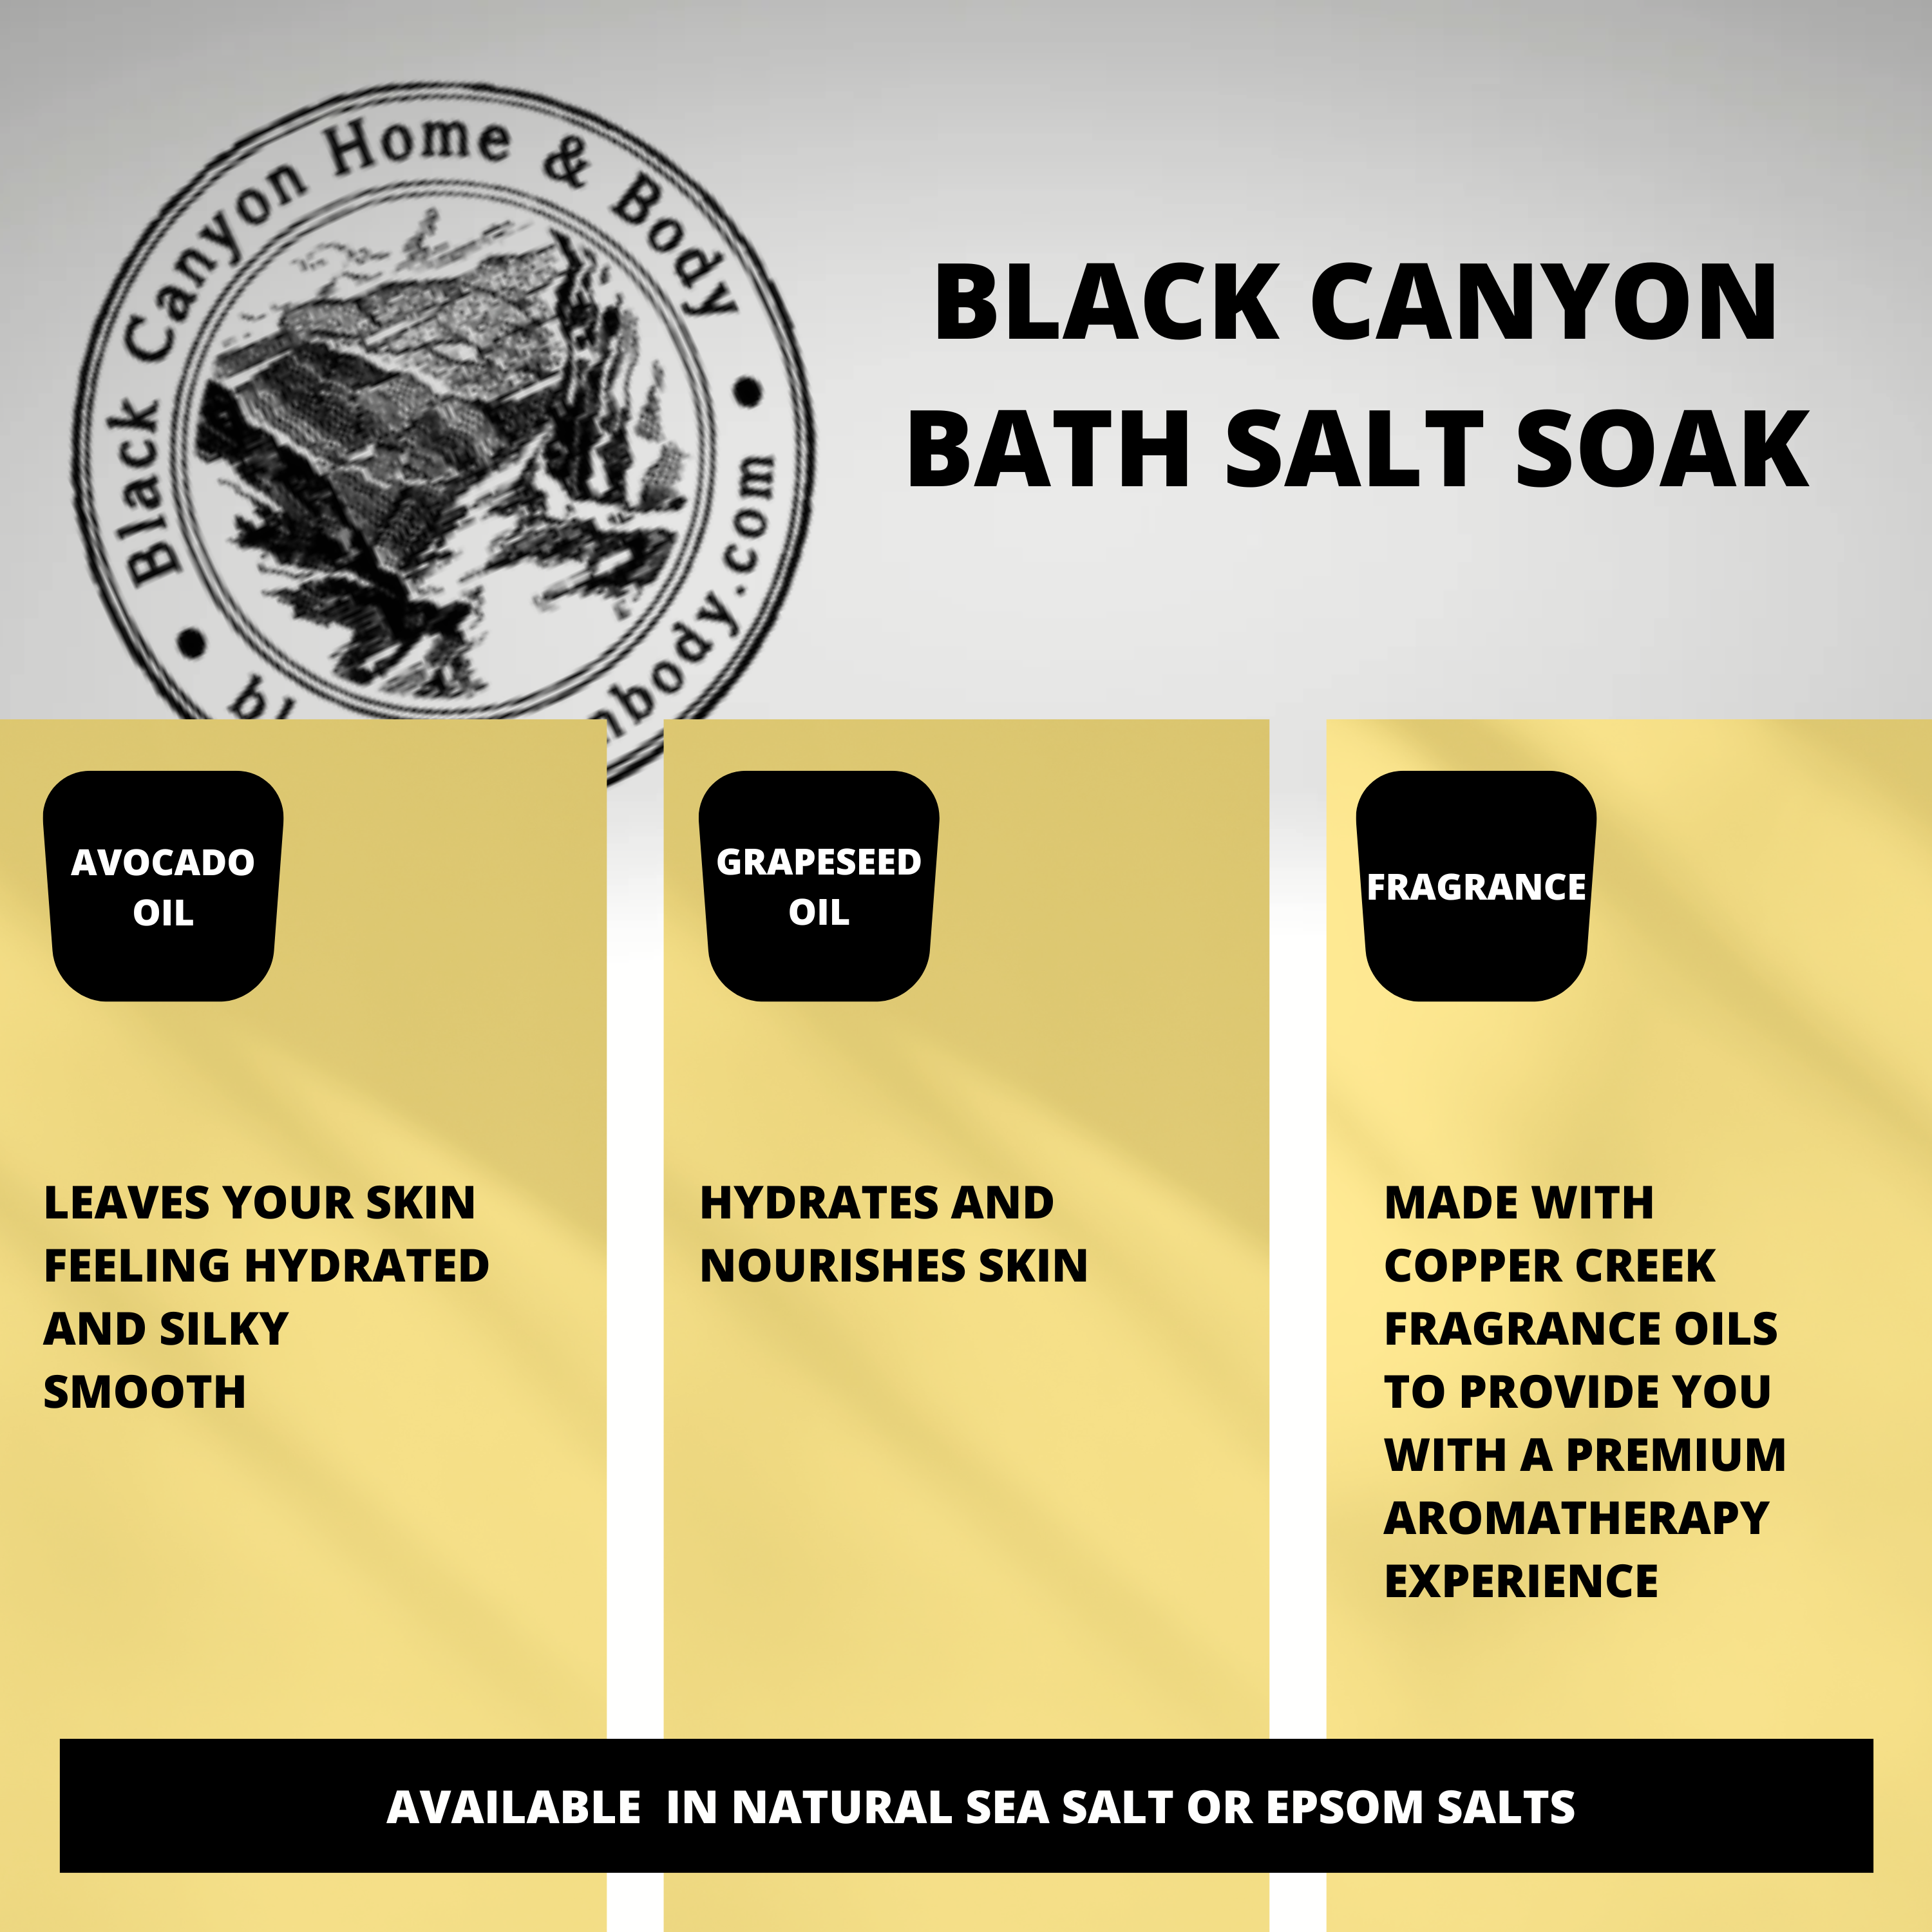 Black Canyon Bananas Flambe Scented Sea Salt Bath Soak